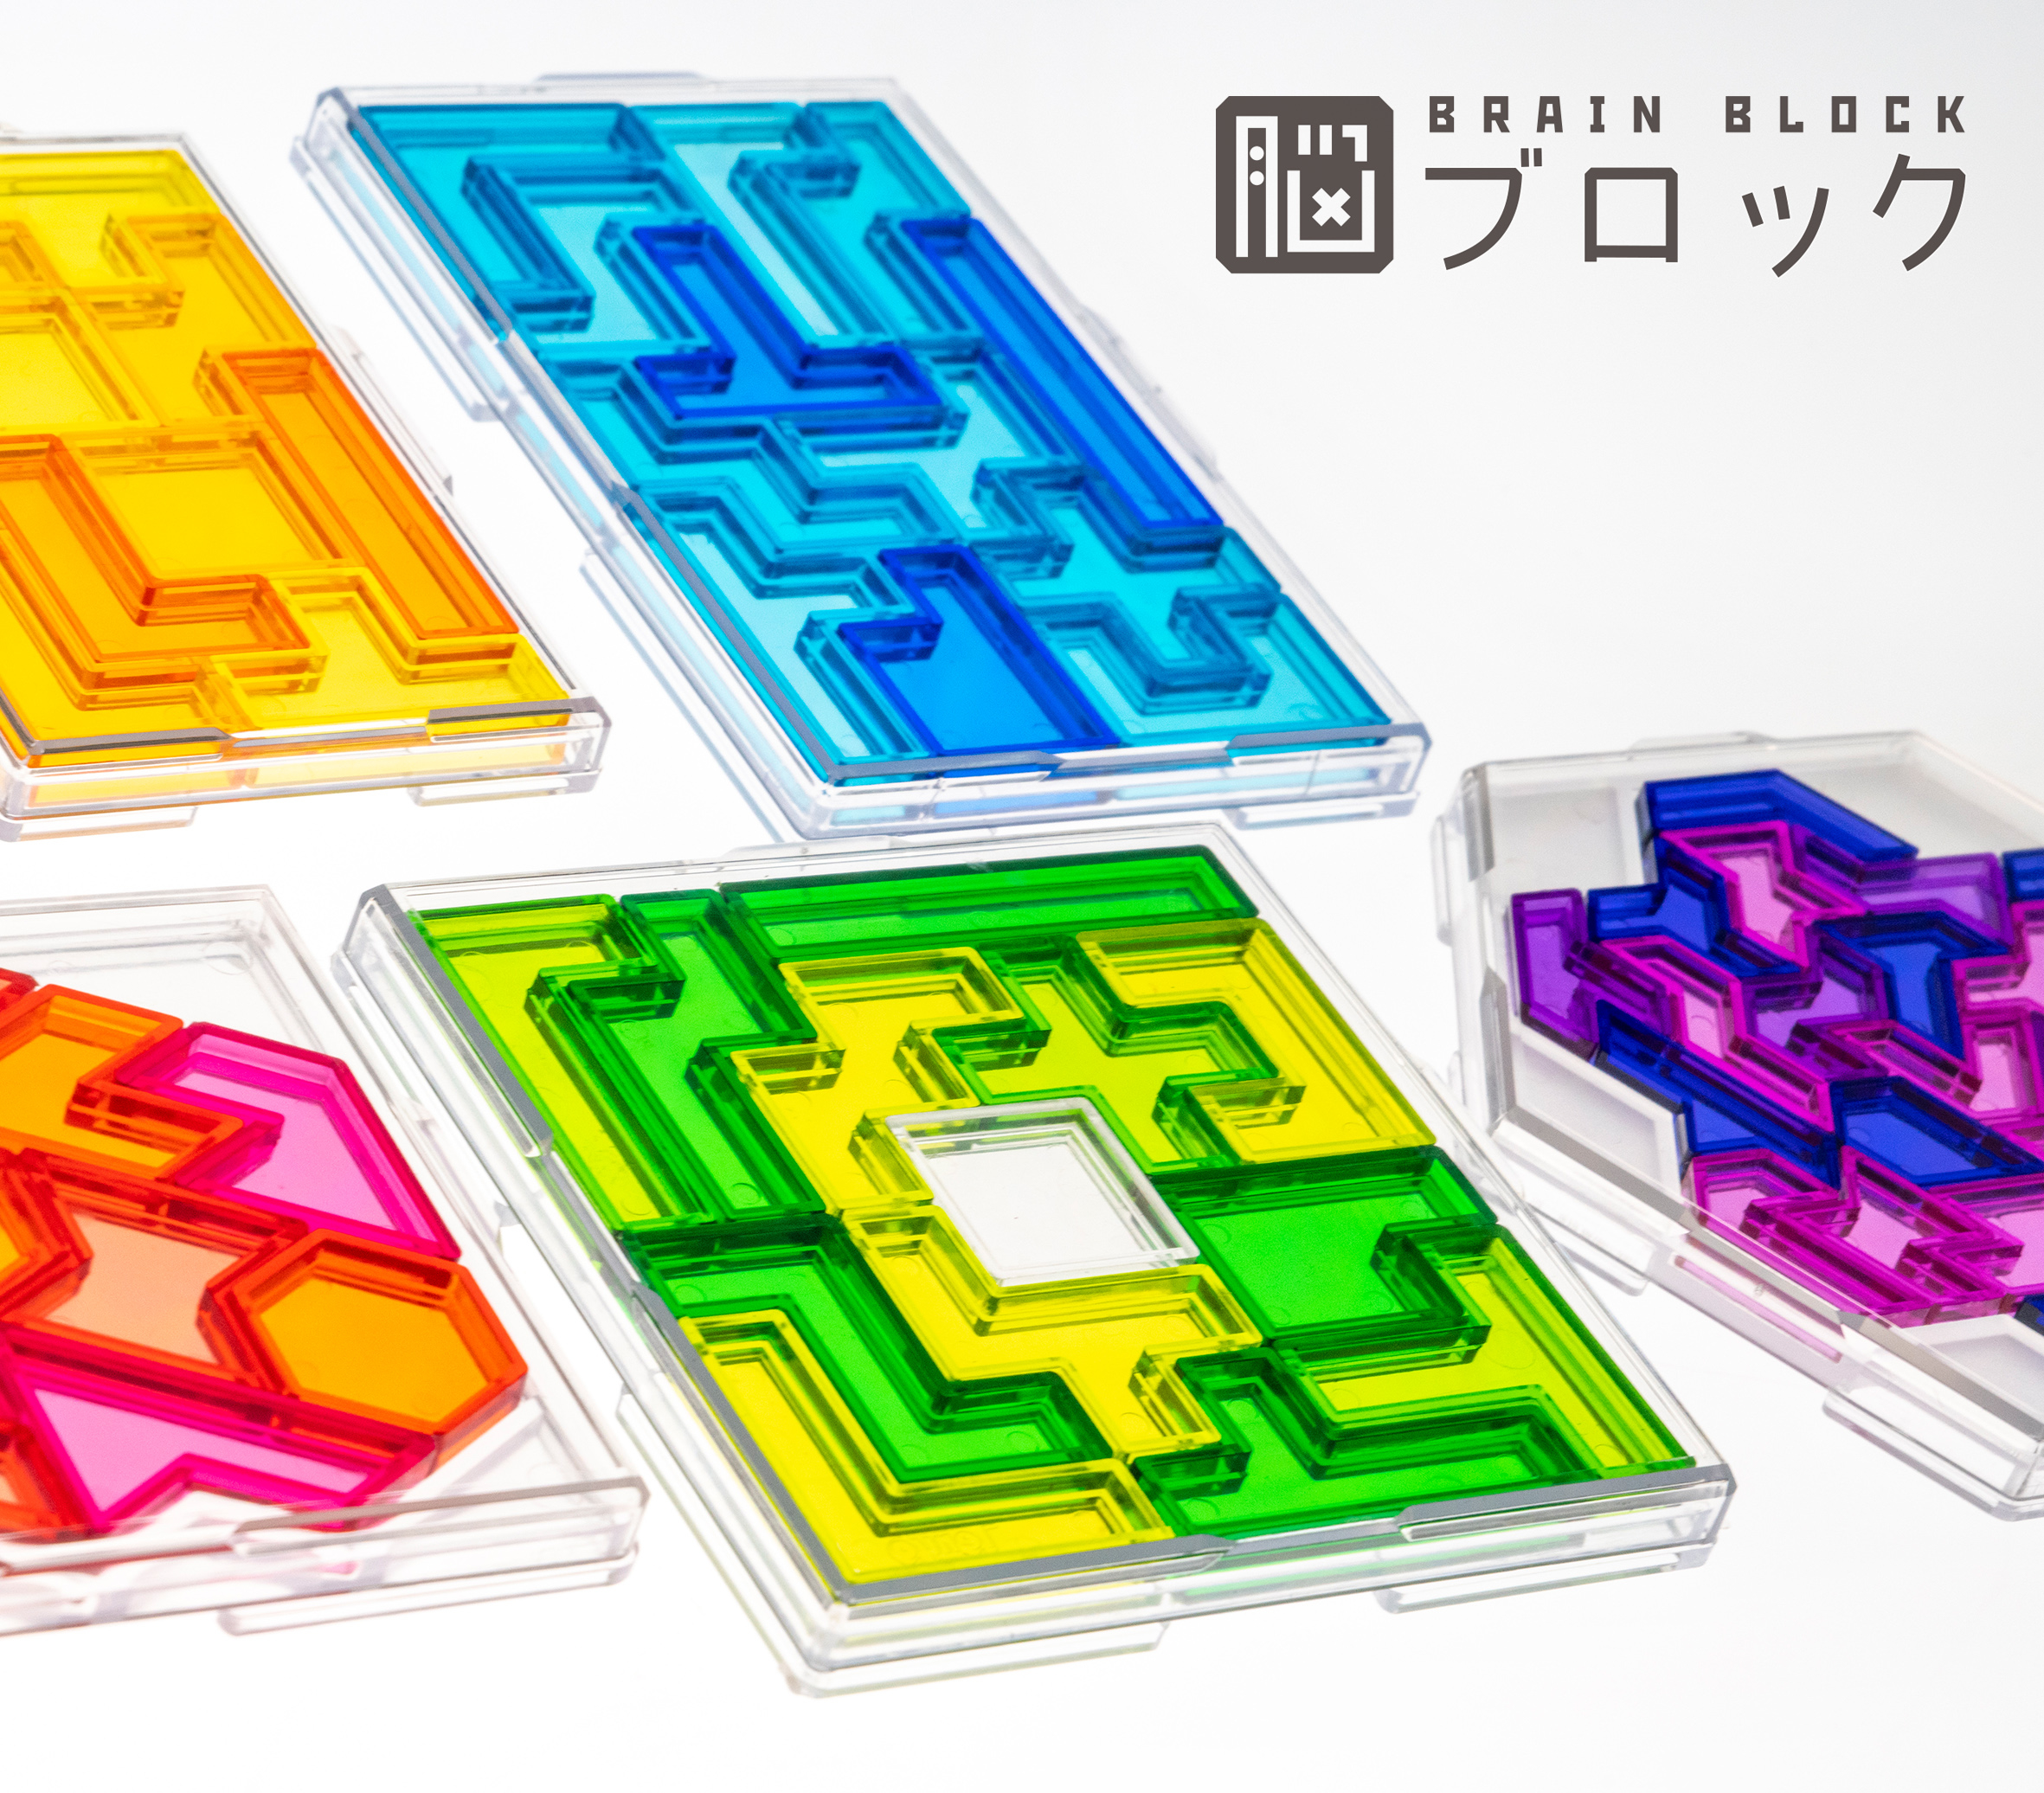 【博多店】永久に遊べるパズル「脳ブロック」